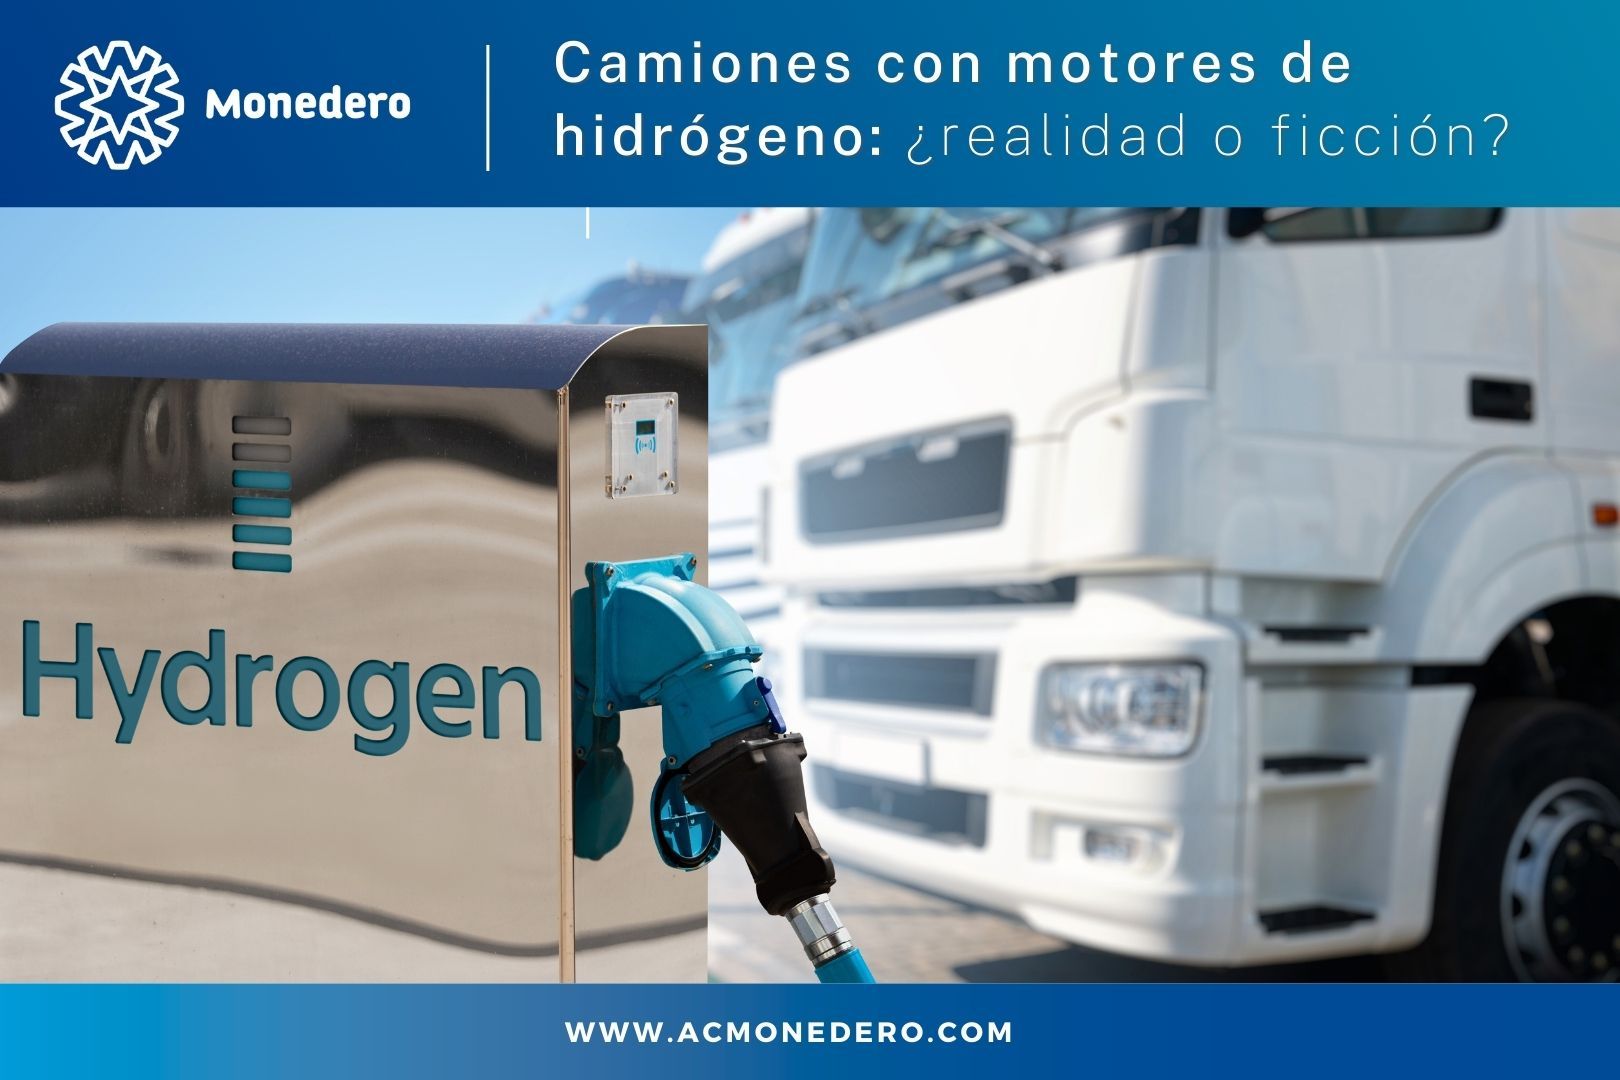 Camiones con motores de hidrógeno